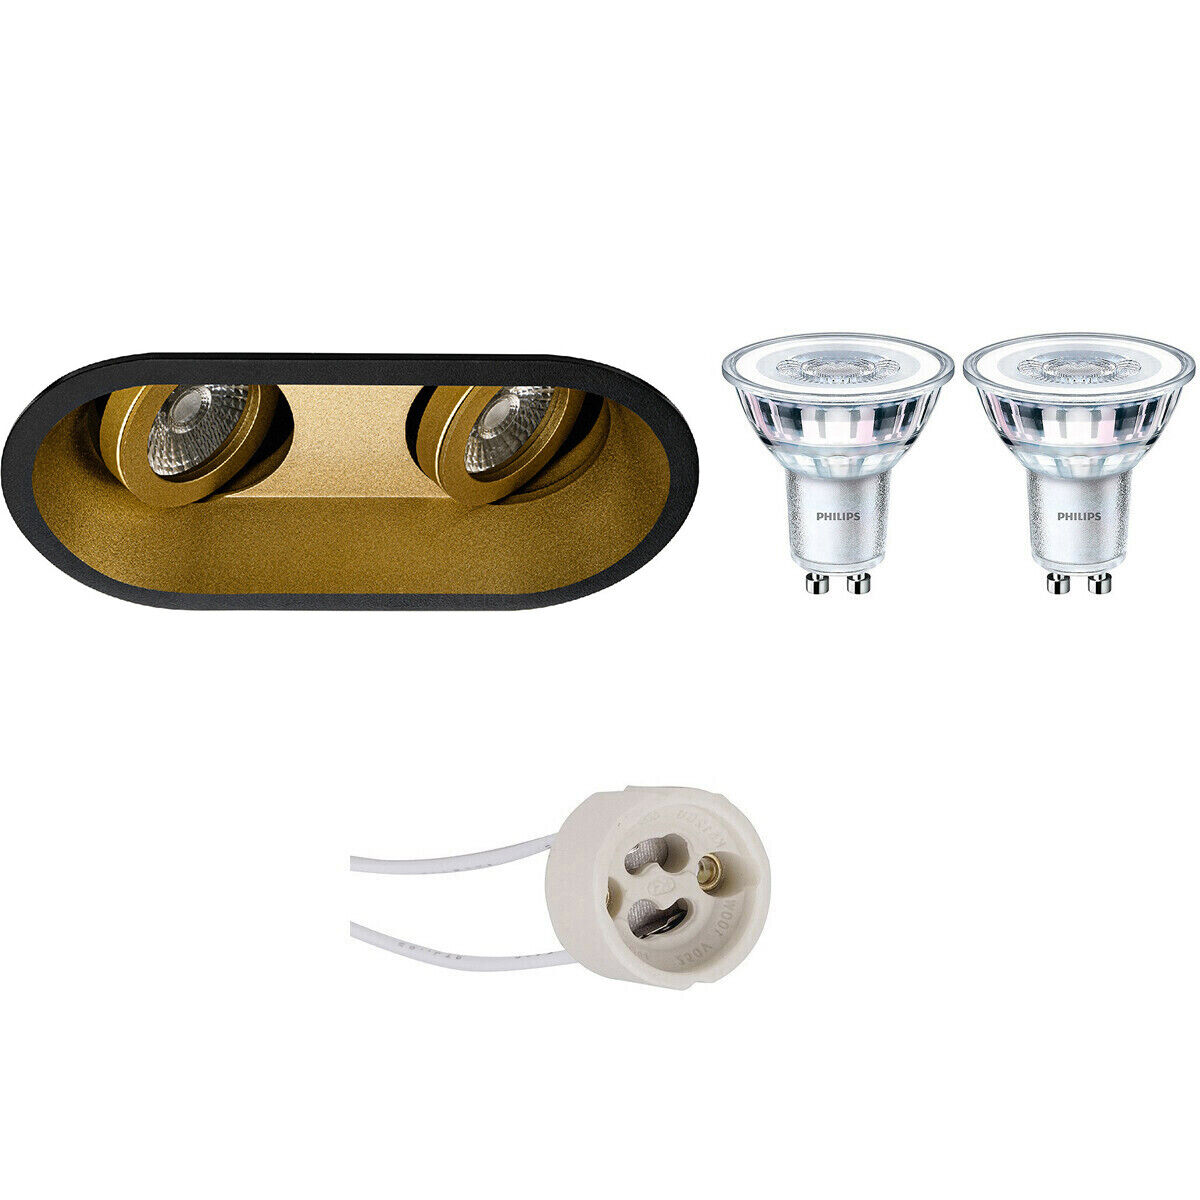 BES LED Voordeelset: LED Spot Set - Pragmi Zano Pro - GU10 Fitting - Inbouw Ovaal Dubbel - Mat Zwart/Goud - Kantelbaar - 185x93mm - Philips - CorePro 830 36D - 5W - Warm Wit 3000K - Dimbaar - Voordeelset